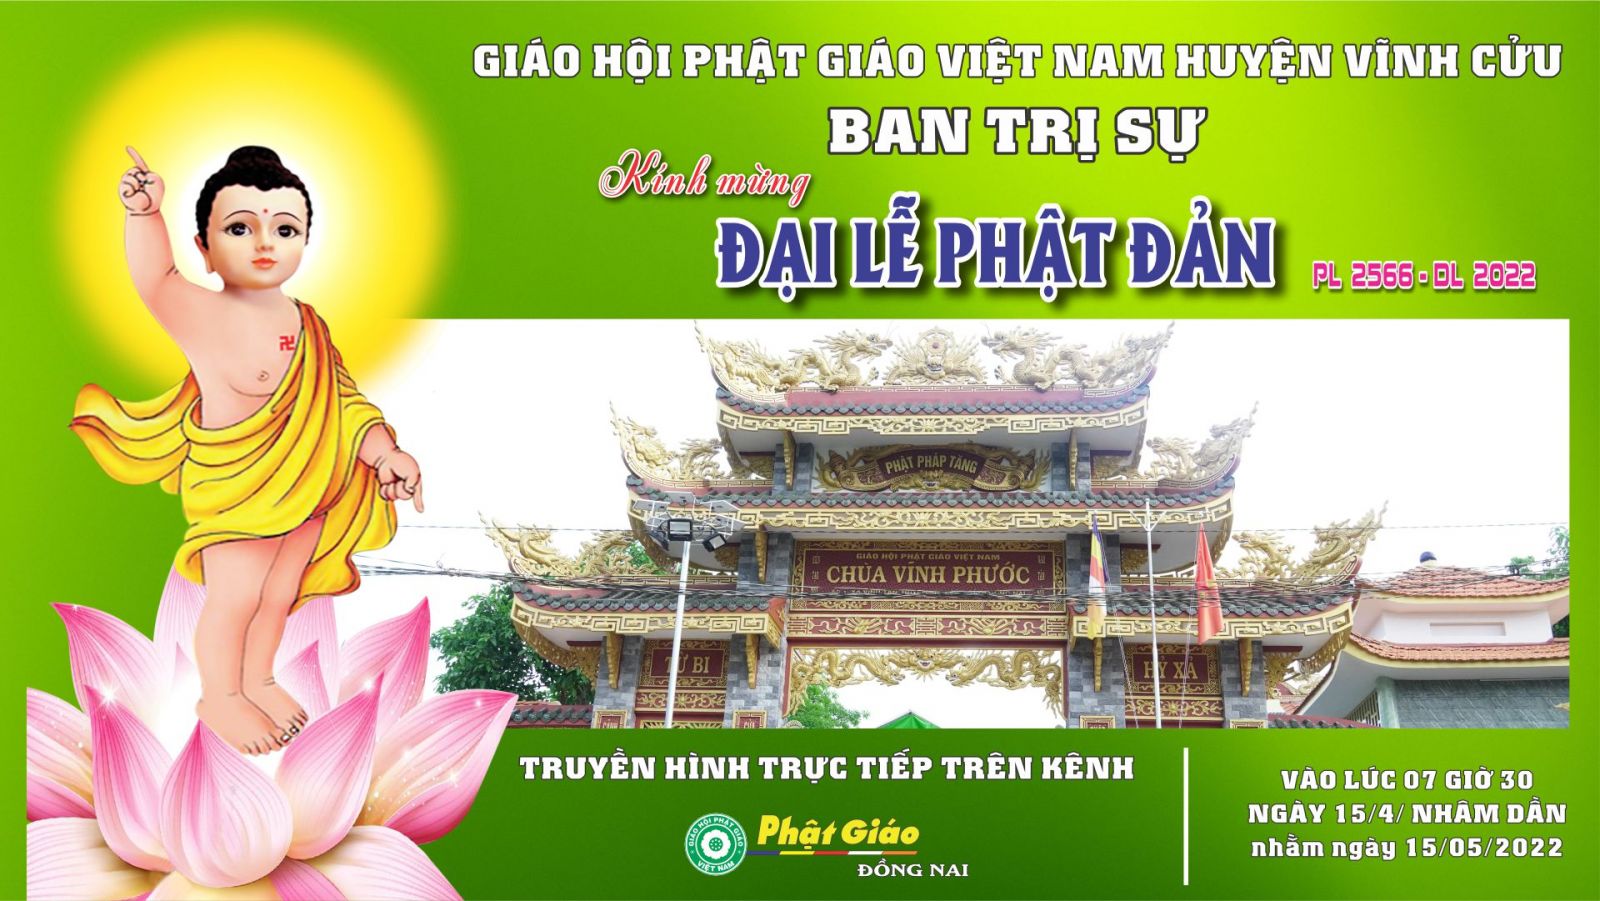 Trực tiếp: Ban Trị sụ GHPGVN huyện Vĩnh Cửu - tổ chức Đại lễ Phật Đản PL 2566 - DL 2022.